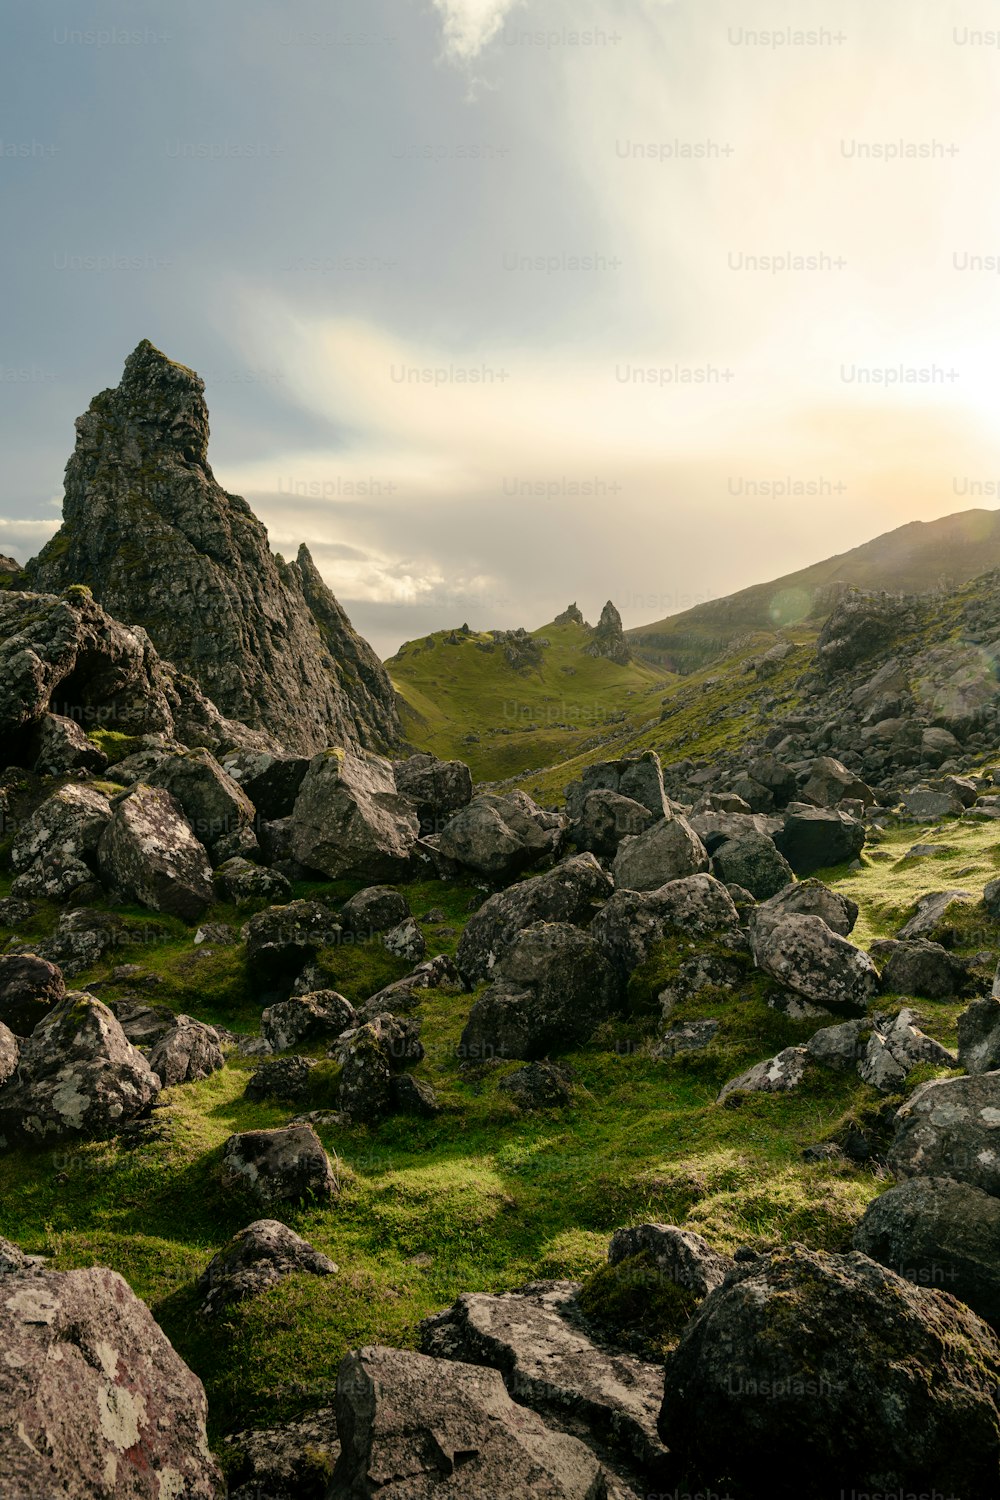 Un champ rocheux avec de l’herbe et des rochers sous un ciel nuageux